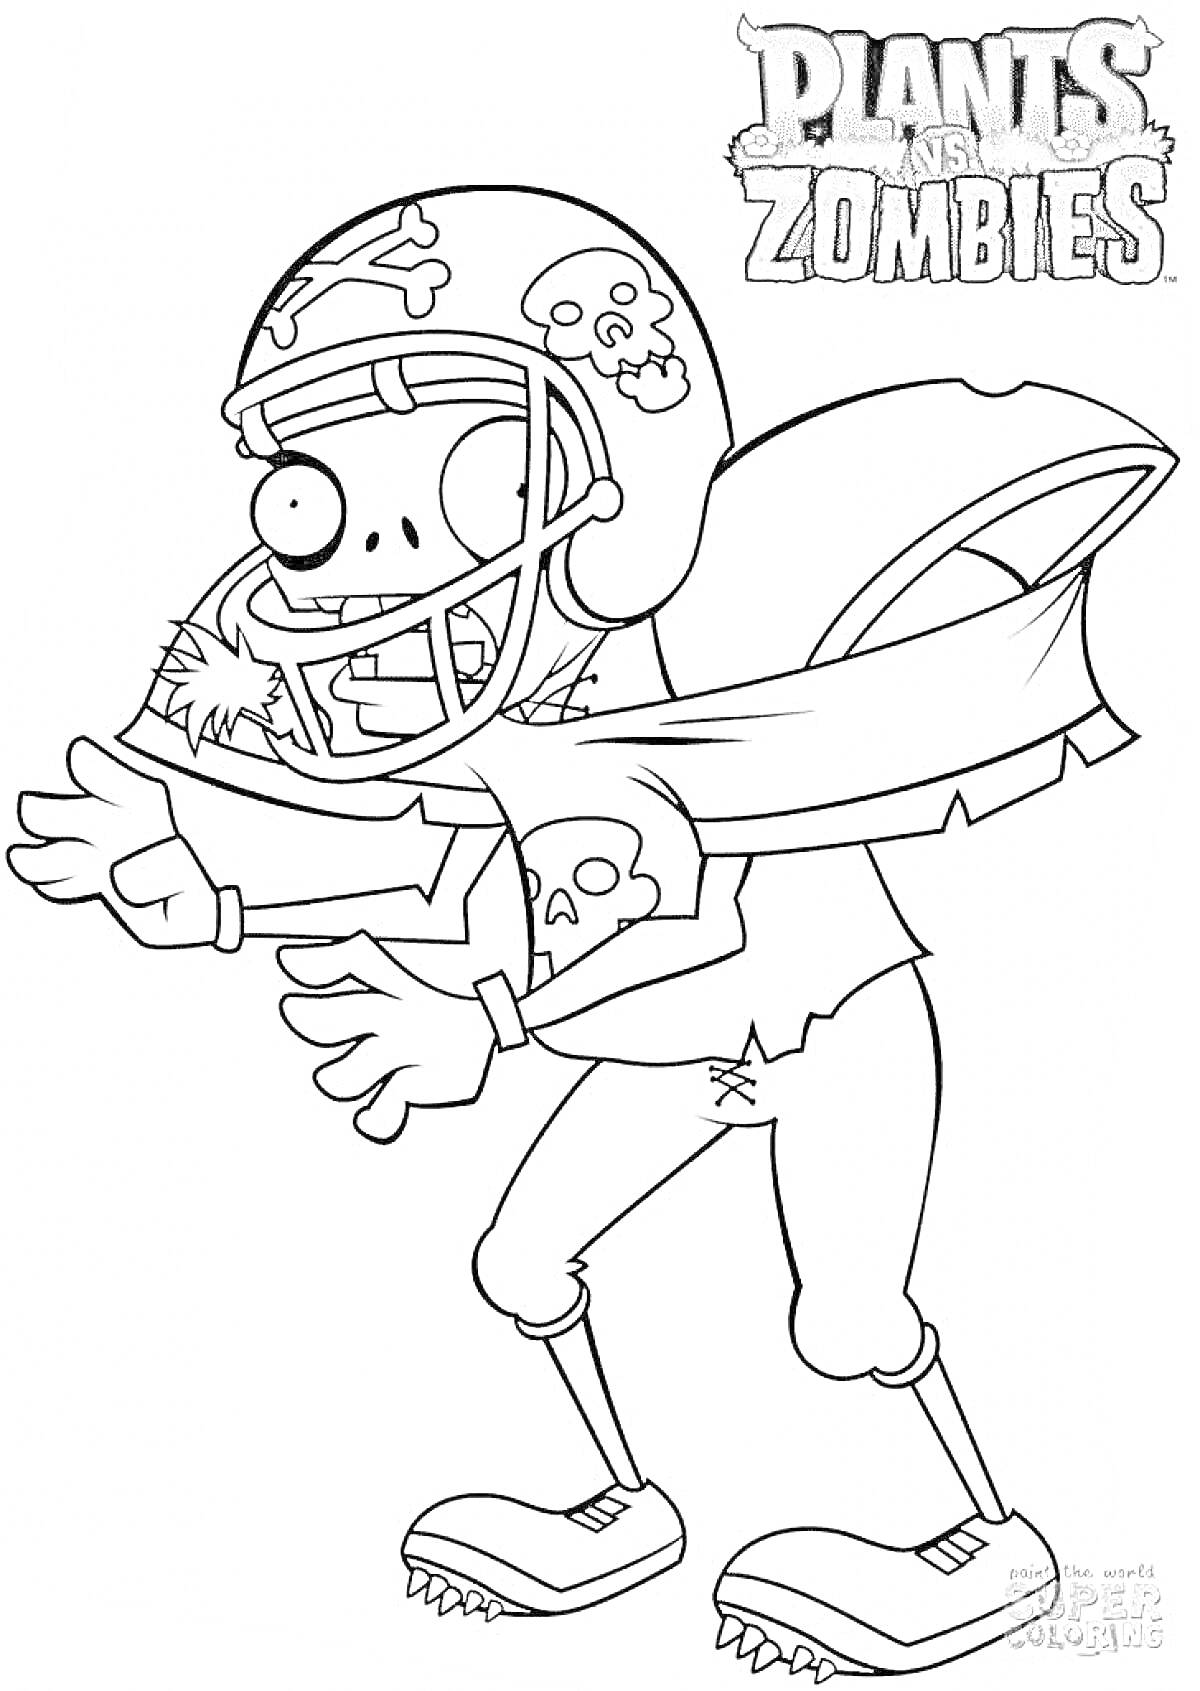 Зомби-футболист из Plants vs Zombies, пустой шлем с черепами, порванная футболка, жесткие штаны, ботинки с шипами